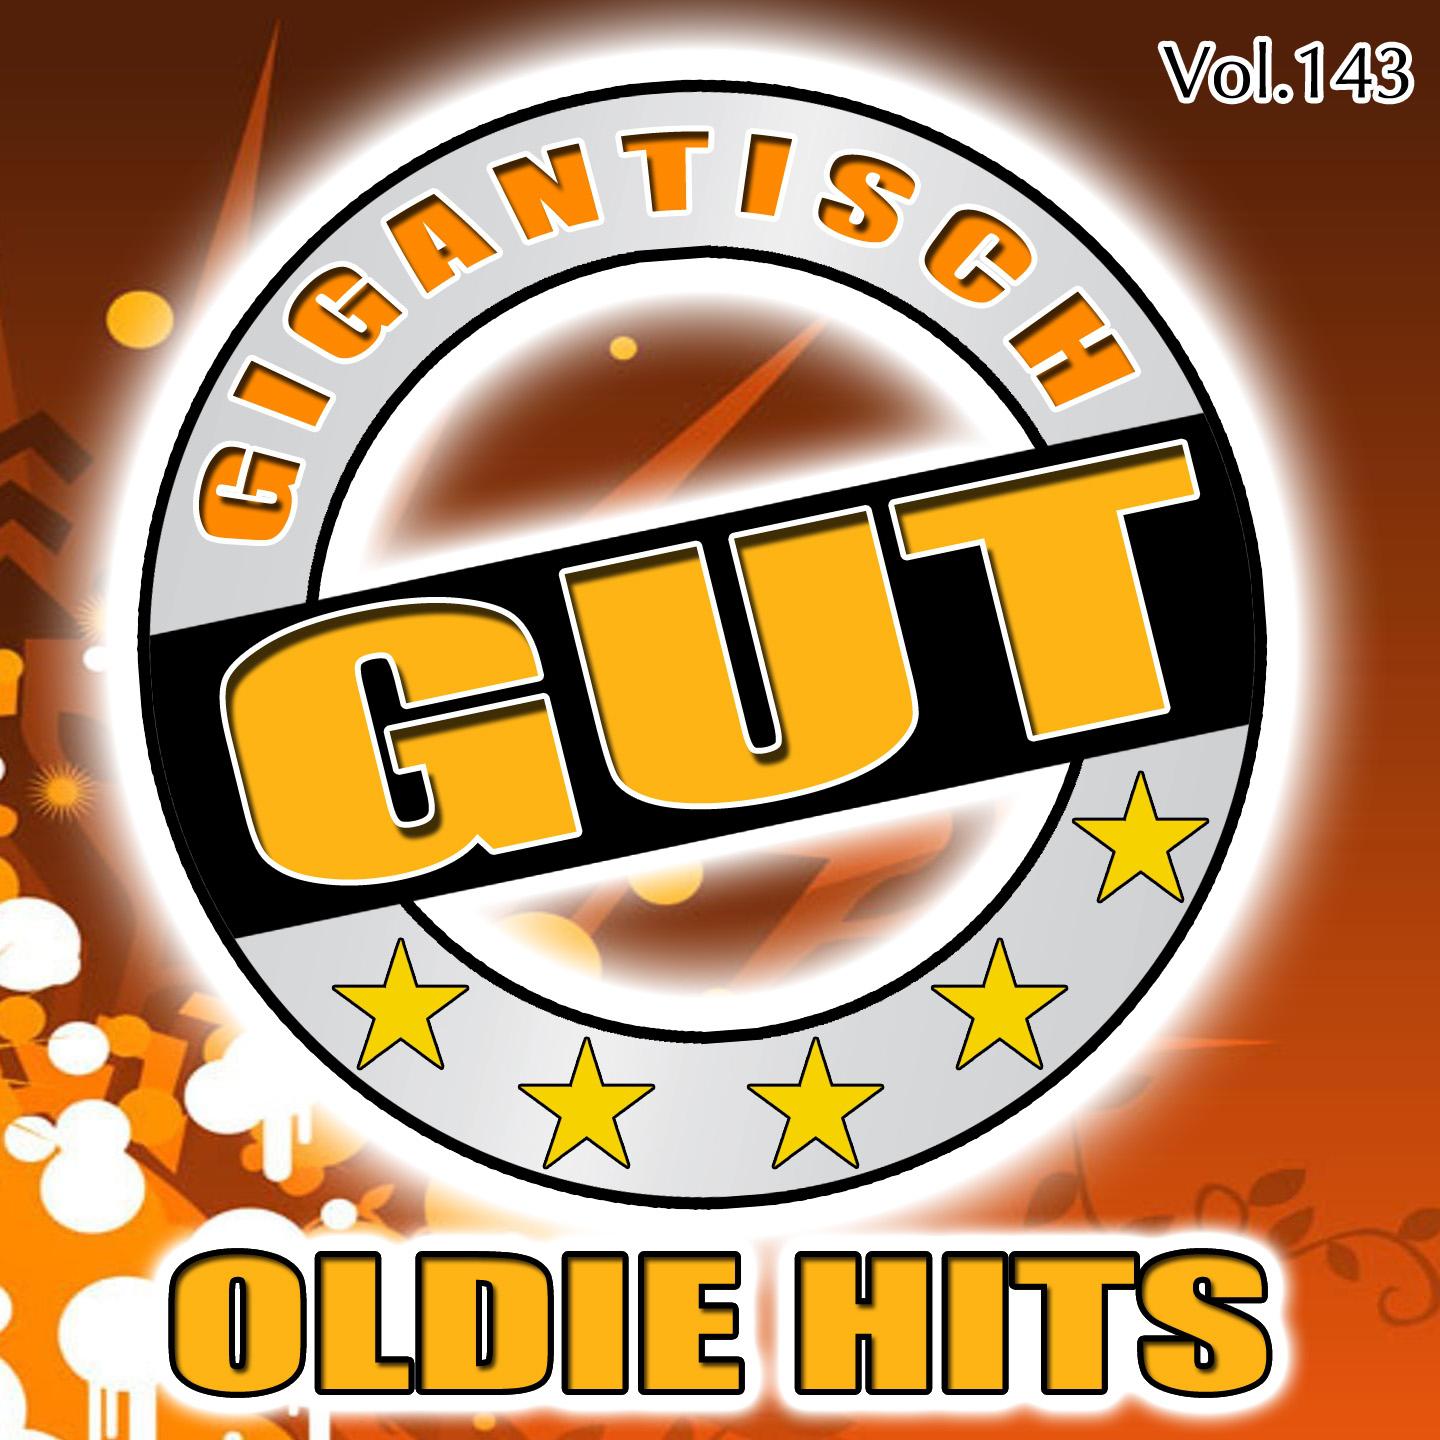 Gigantisch Gut: Oldie Hits, Vol. 143